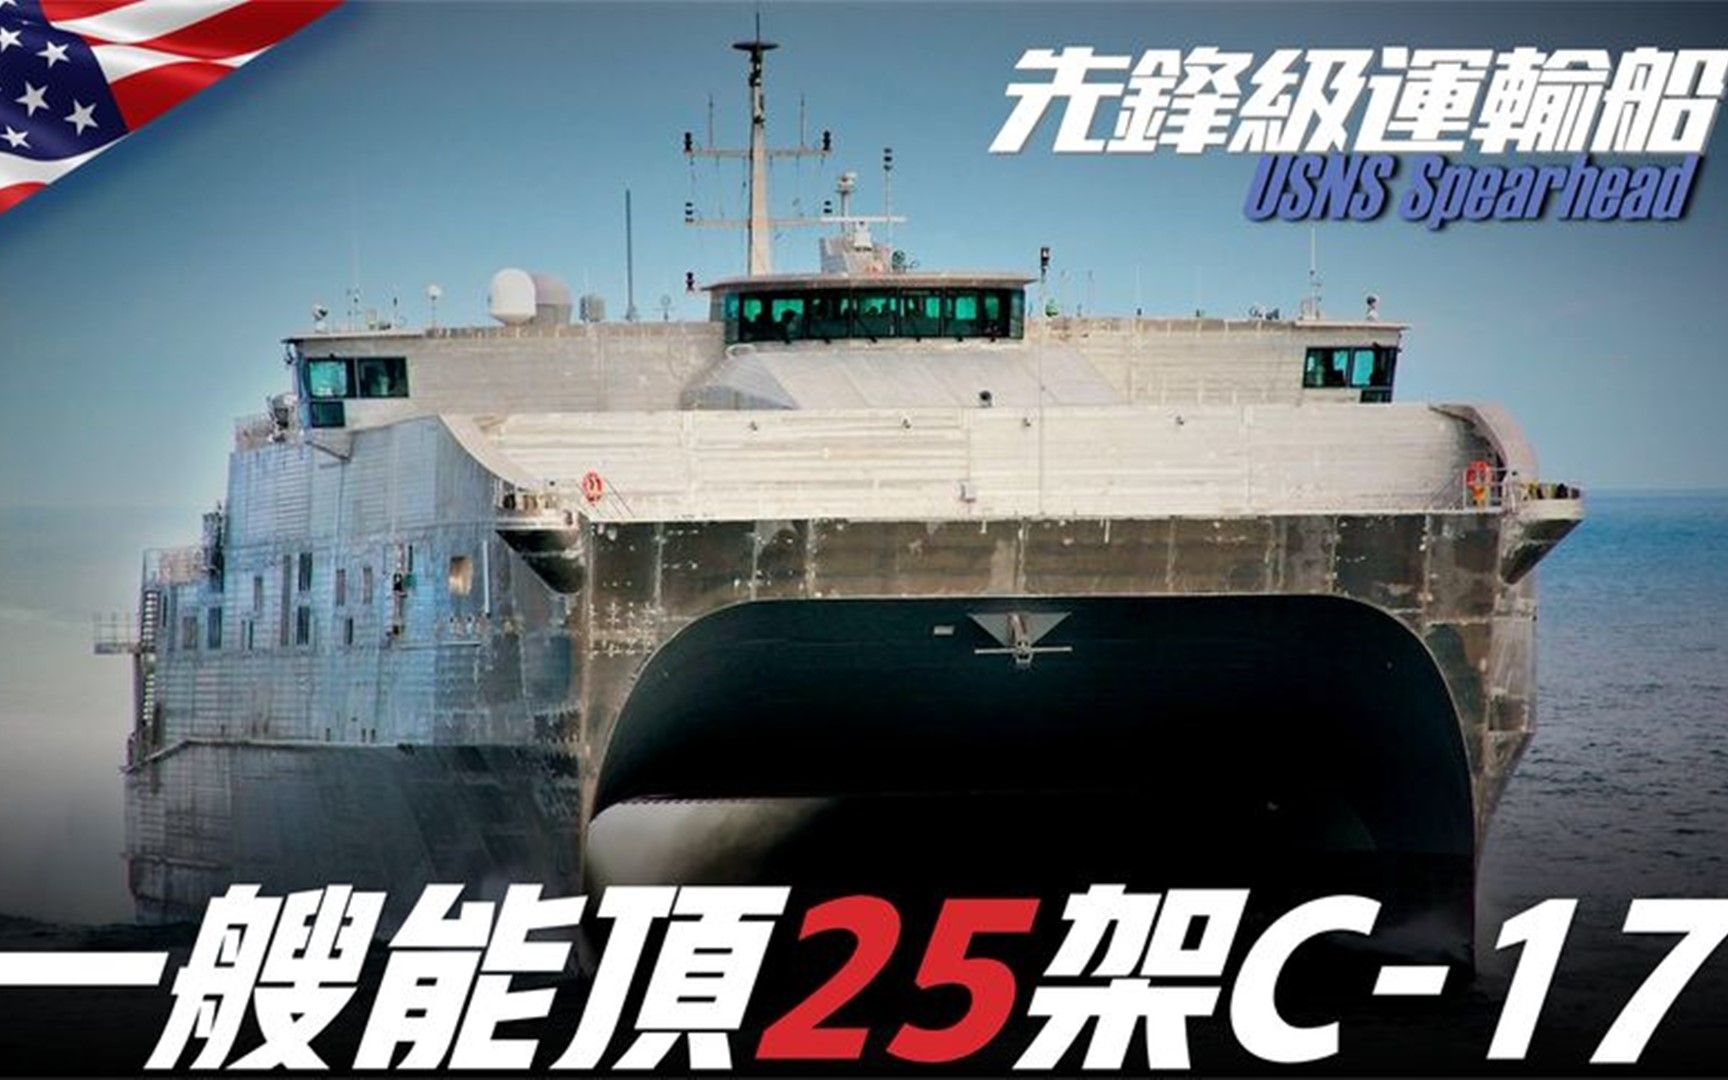 【先锋级远征快速运输船】造价高达1.8亿美元，一艘可抵25架C-17